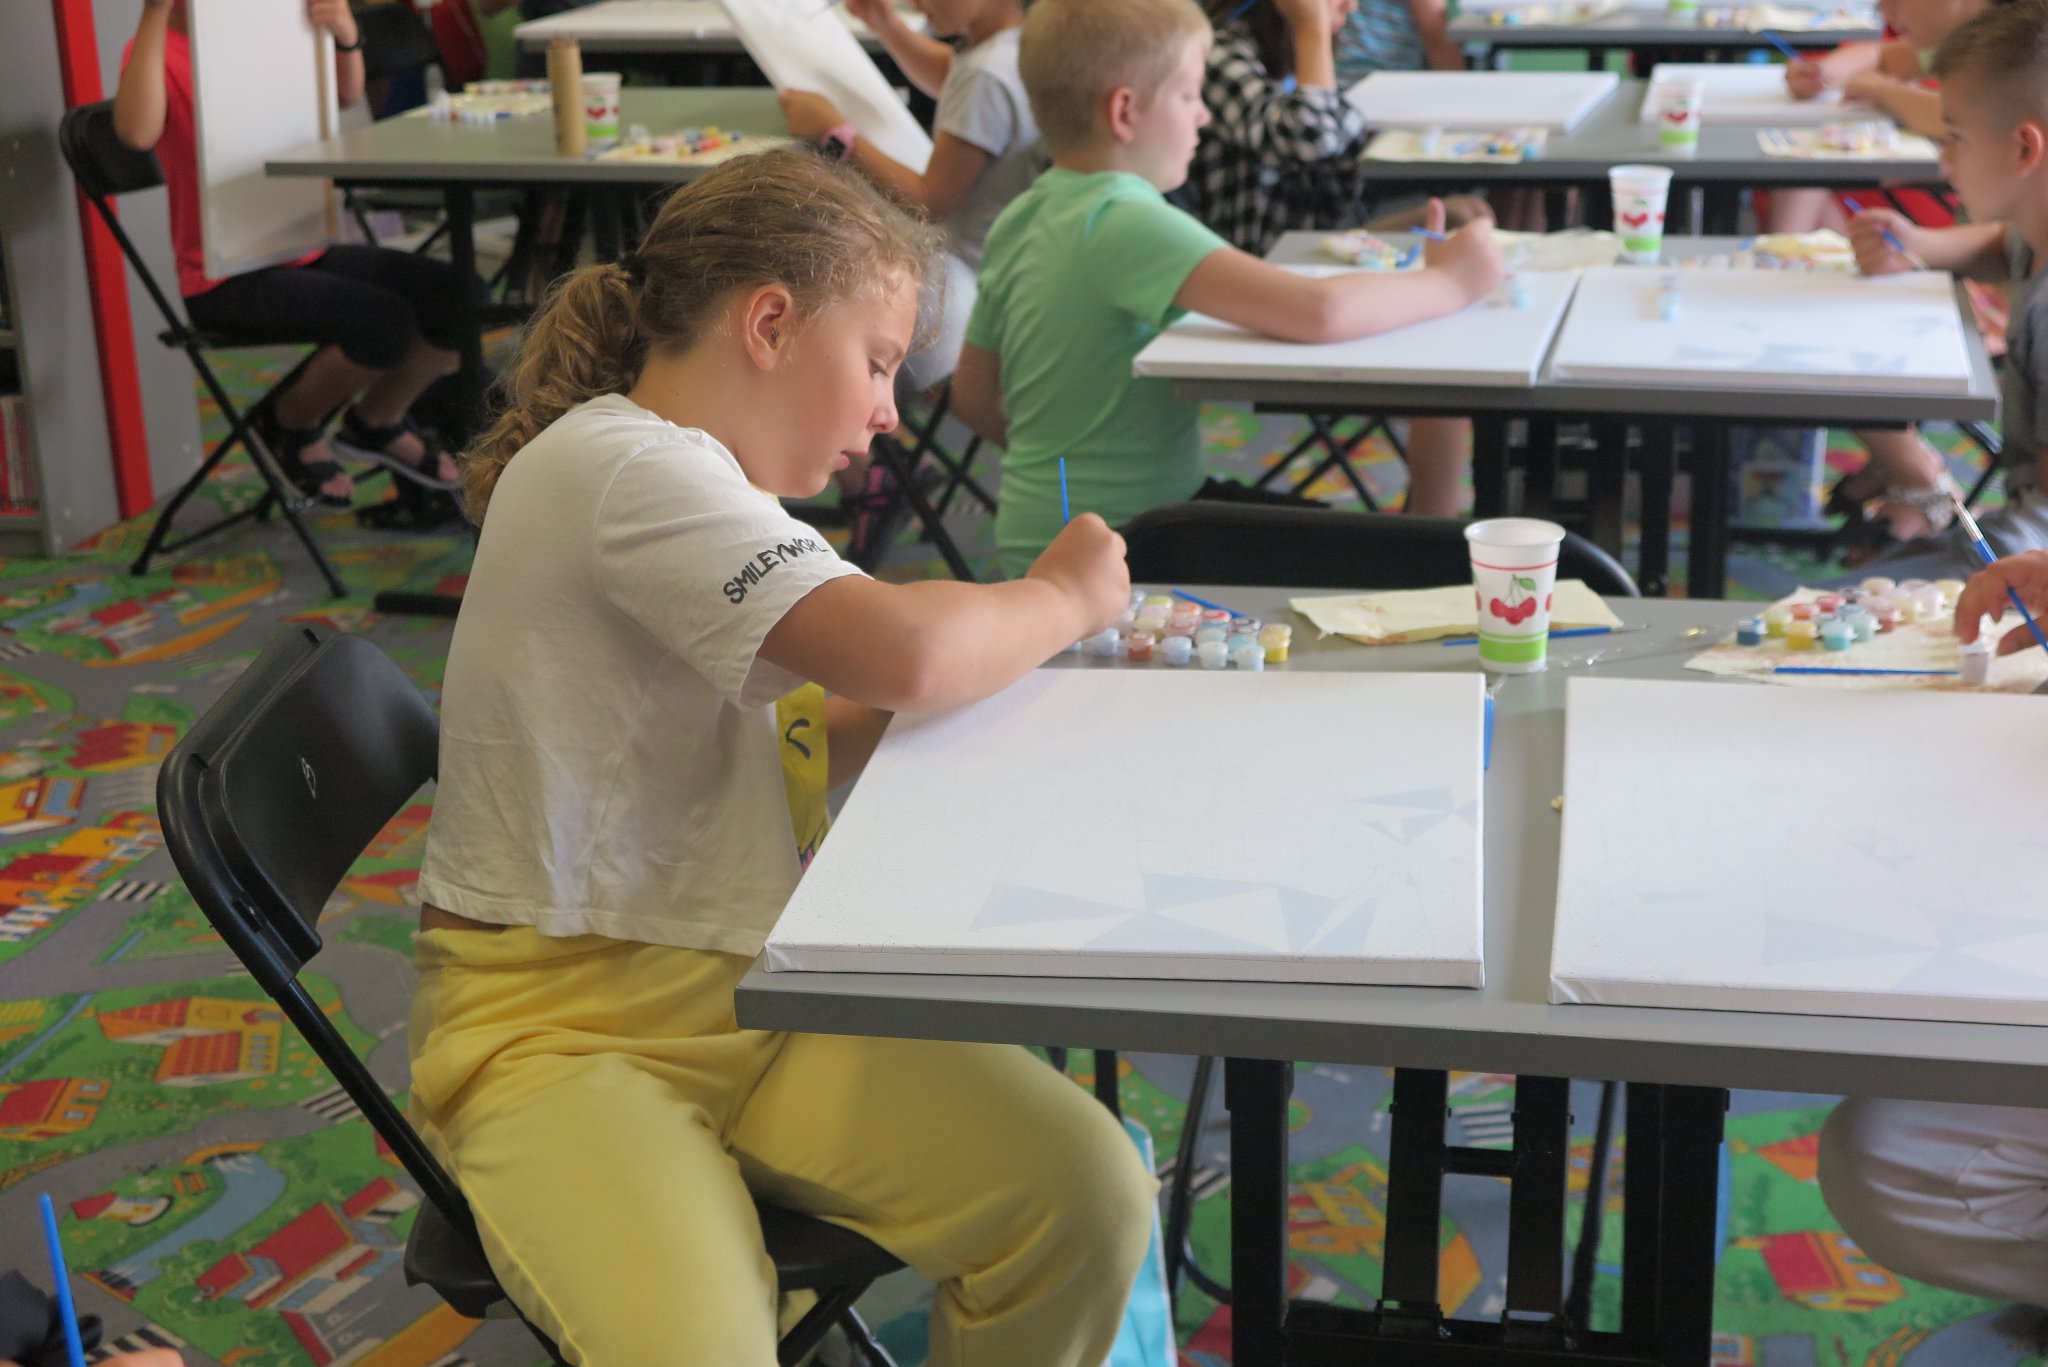 dzieci siedzą przy stolikach w oddziale dla dzieci, na stolikach leżą zestawy do malowania obrazów, dzieci malują obrazy